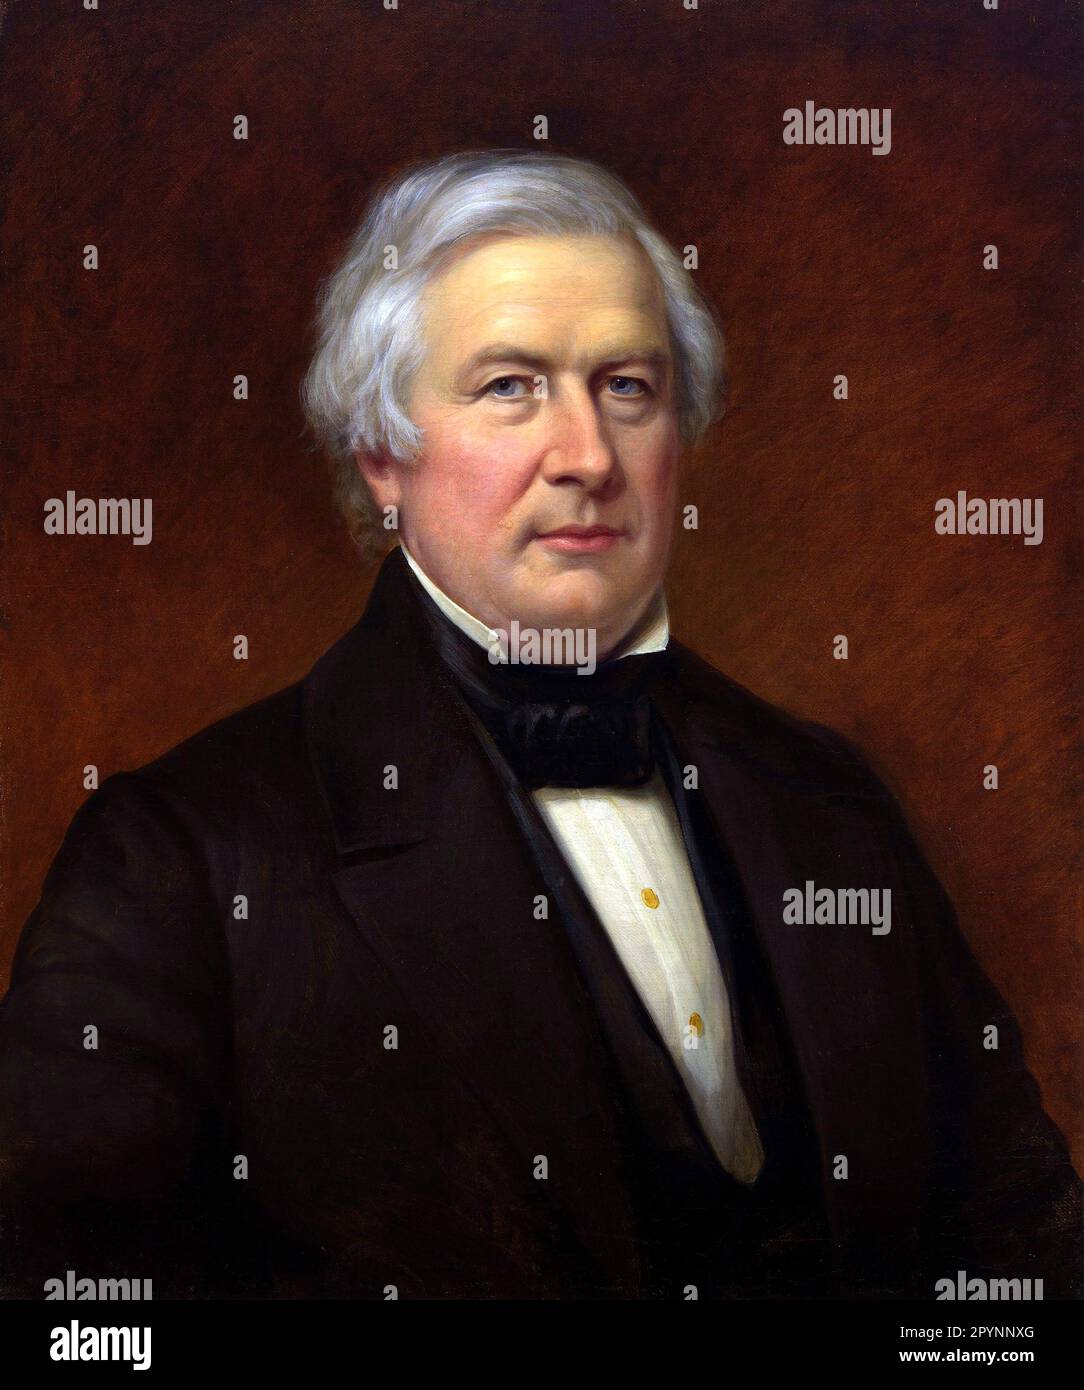 Millard Fillmore. Portrait des 13. Präsidenten der Vereinigten Staaten, Millard Fillmore (1800-1874) Stockfoto